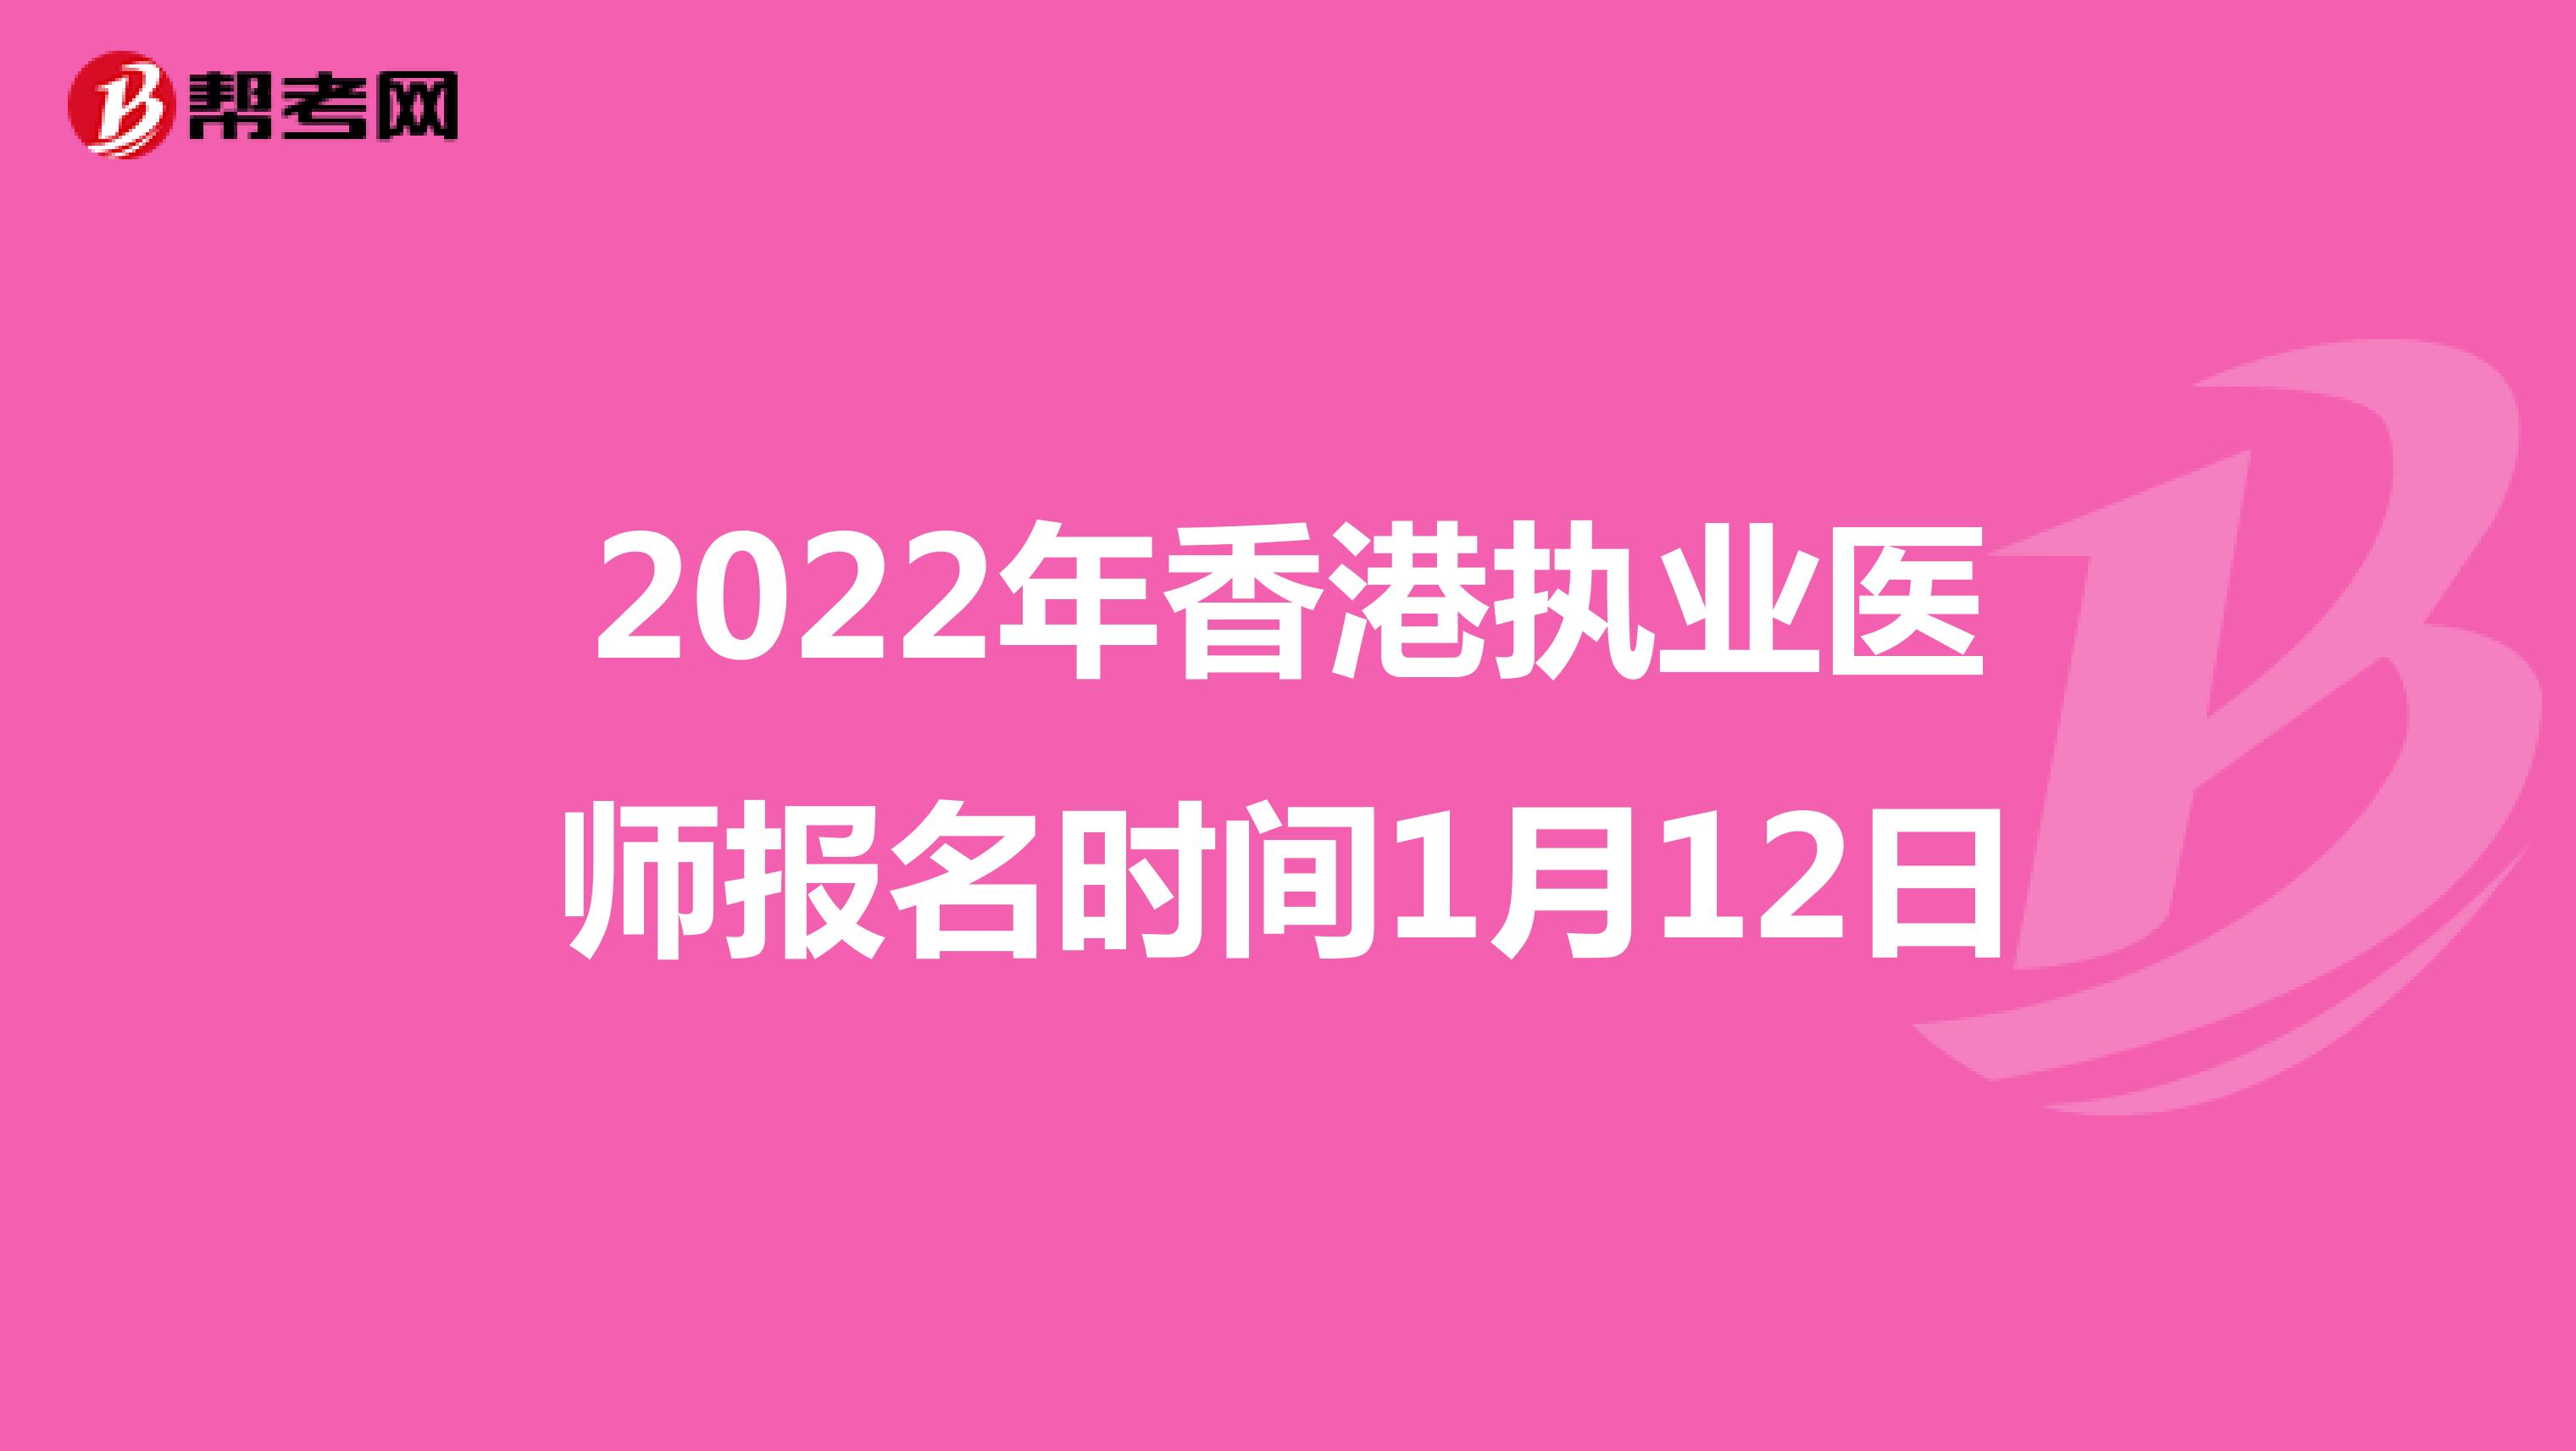 2022年香港执业医师报名时间1月12日